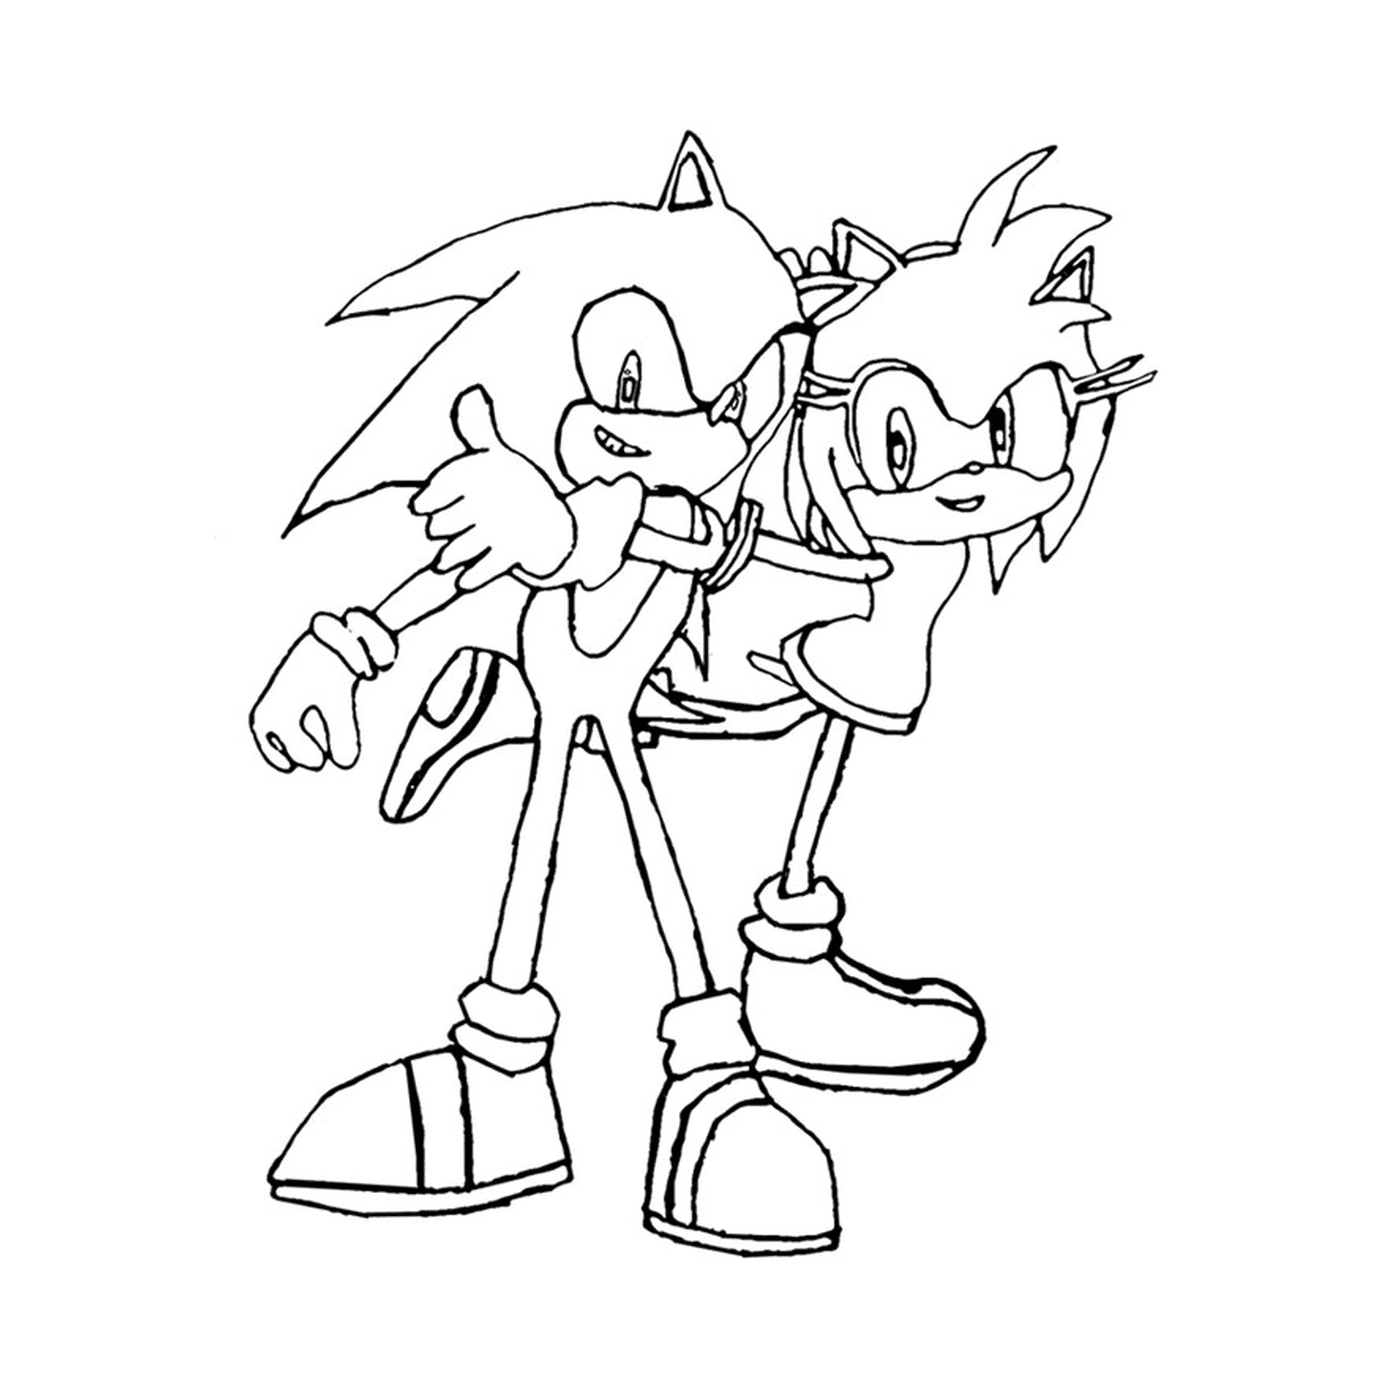  Sonic e i suoi amici insieme 